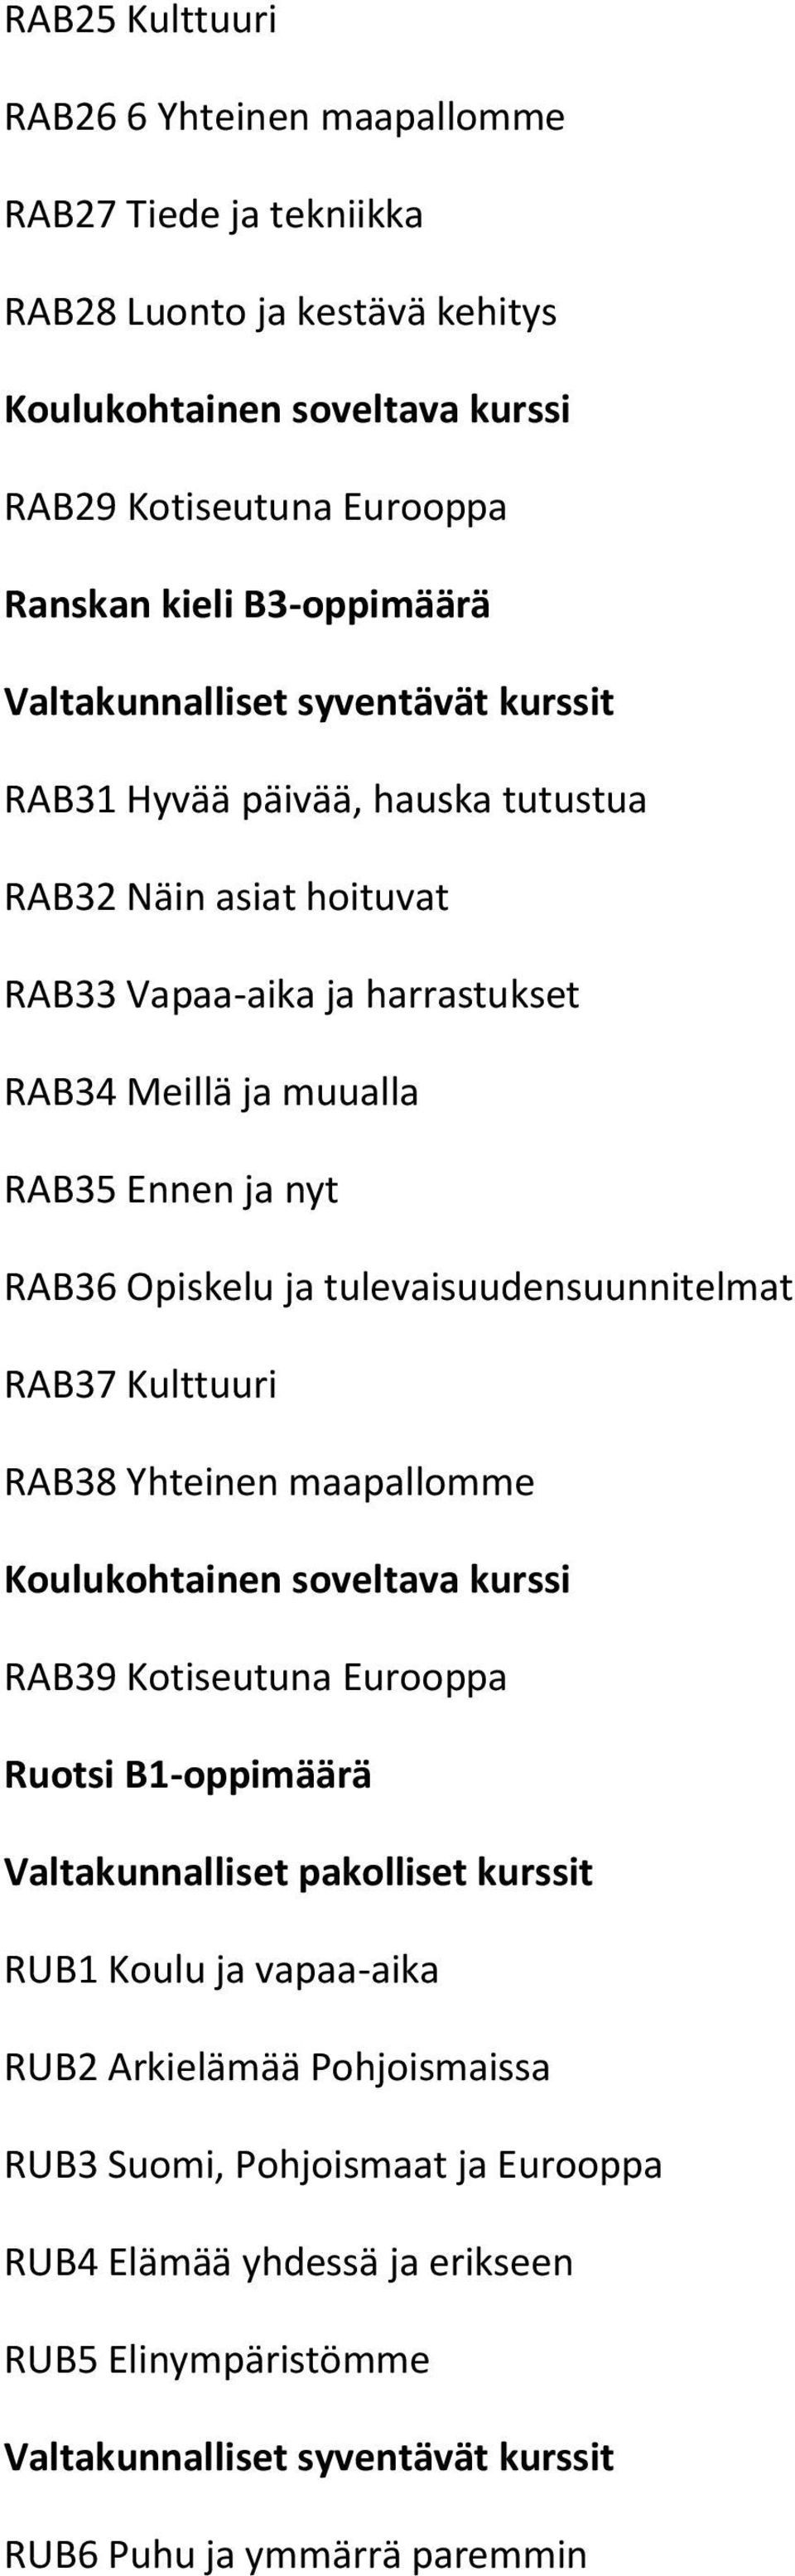 RAB36 Opiskelu ja tulevaisuudensuunnitelmat RAB37 Kulttuuri RAB38 Yhteinen maapallomme Koulukohtainen soveltava kurssi RAB39 Kotiseutuna Eurooppa Ruotsi B1-oppimäärä